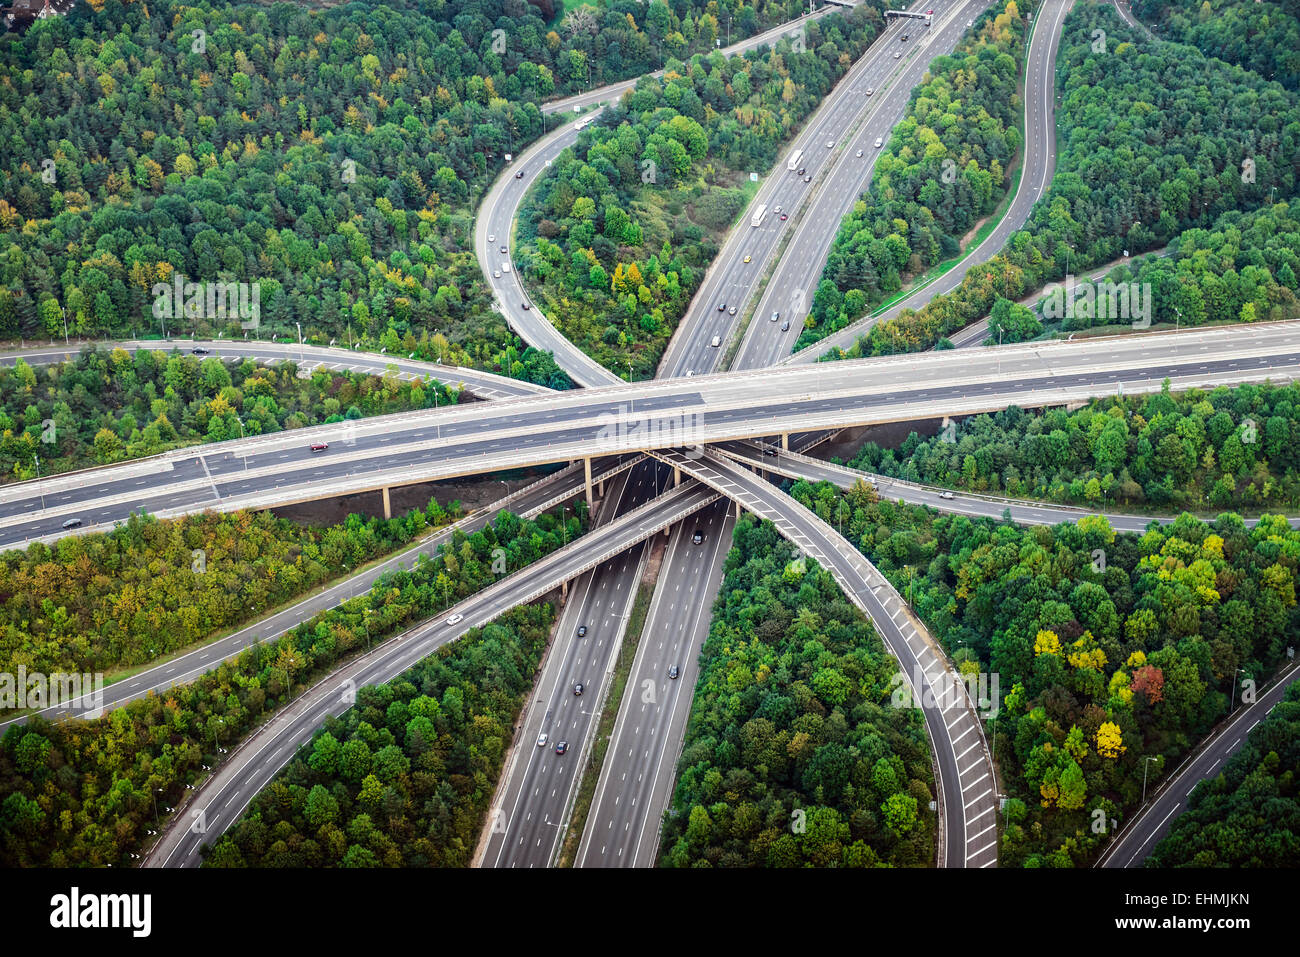 Vue aérienne de l'intersection des autoroutes à proximité d'arbres, Londres, Angleterre Banque D'Images